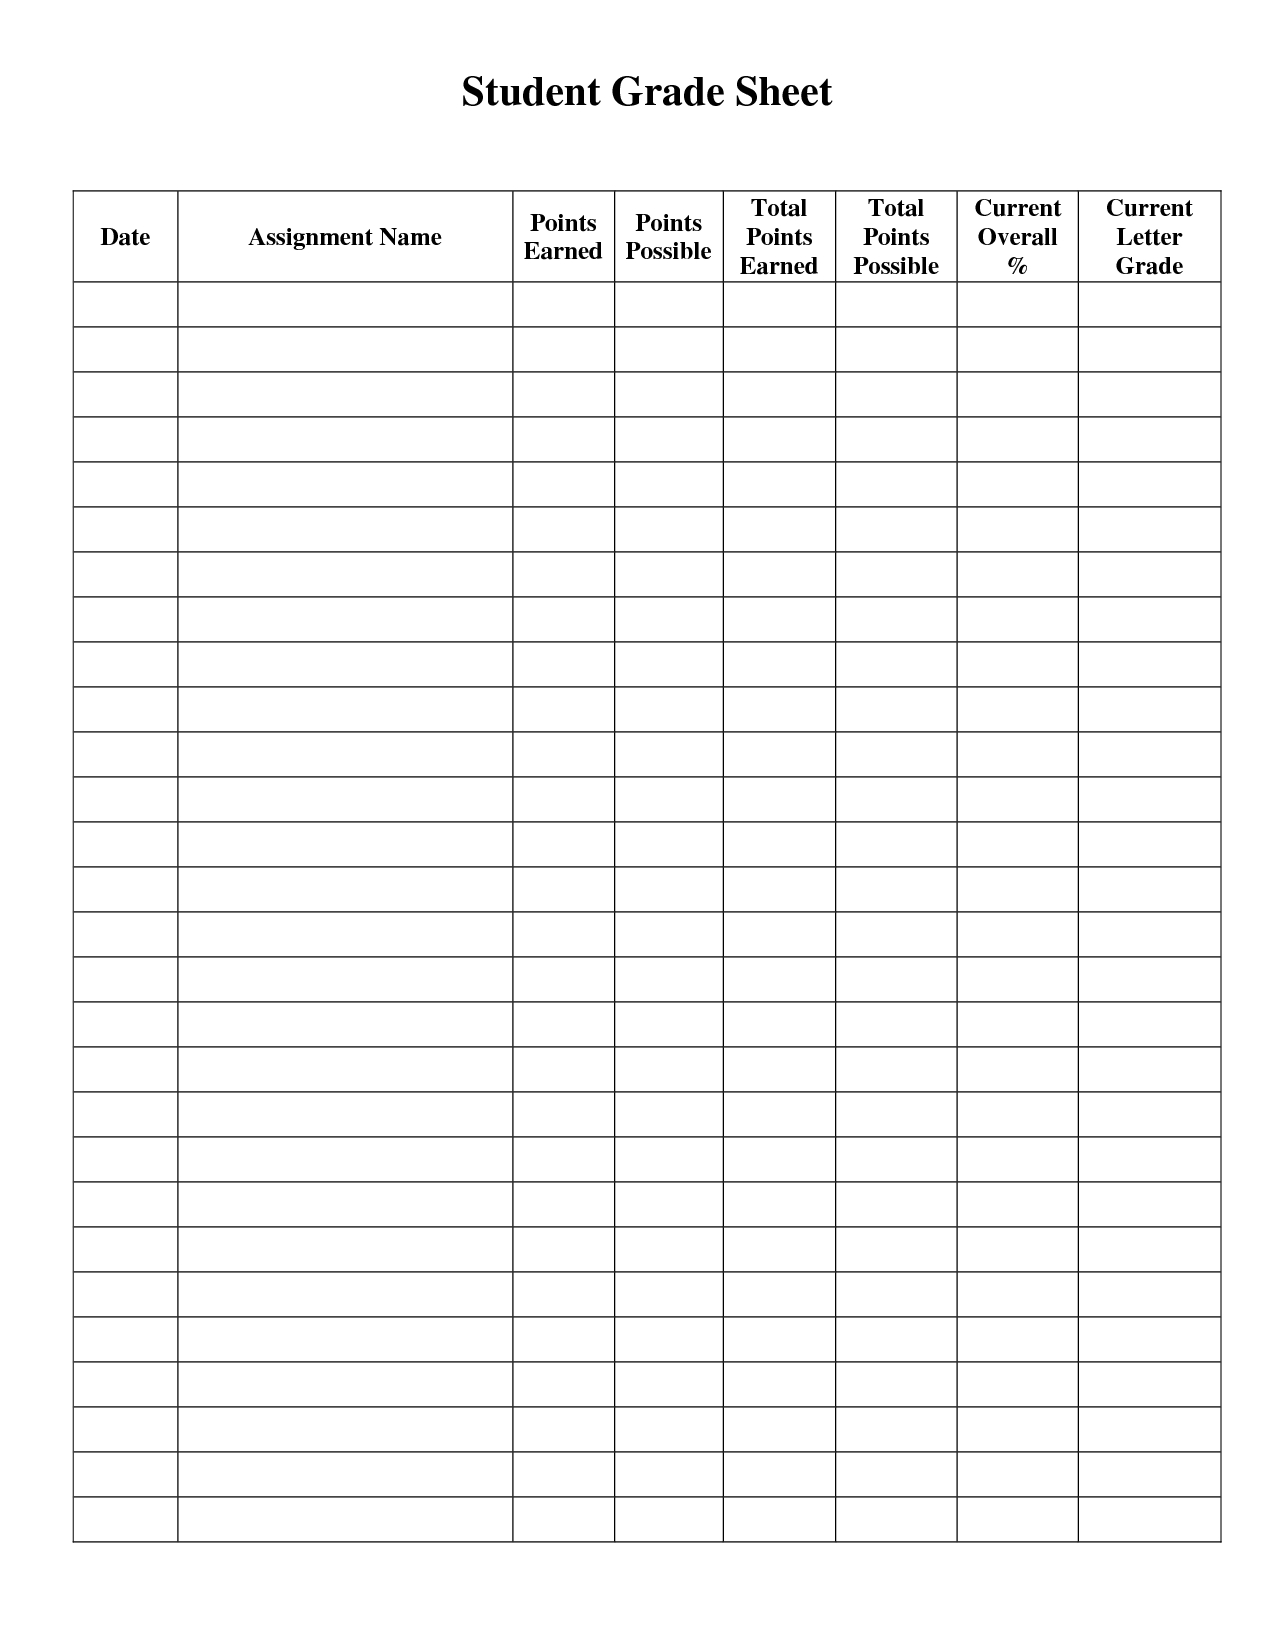 Student Grade Sheet Template | Grade Book Template, Teacher Within Student Grade Report Template